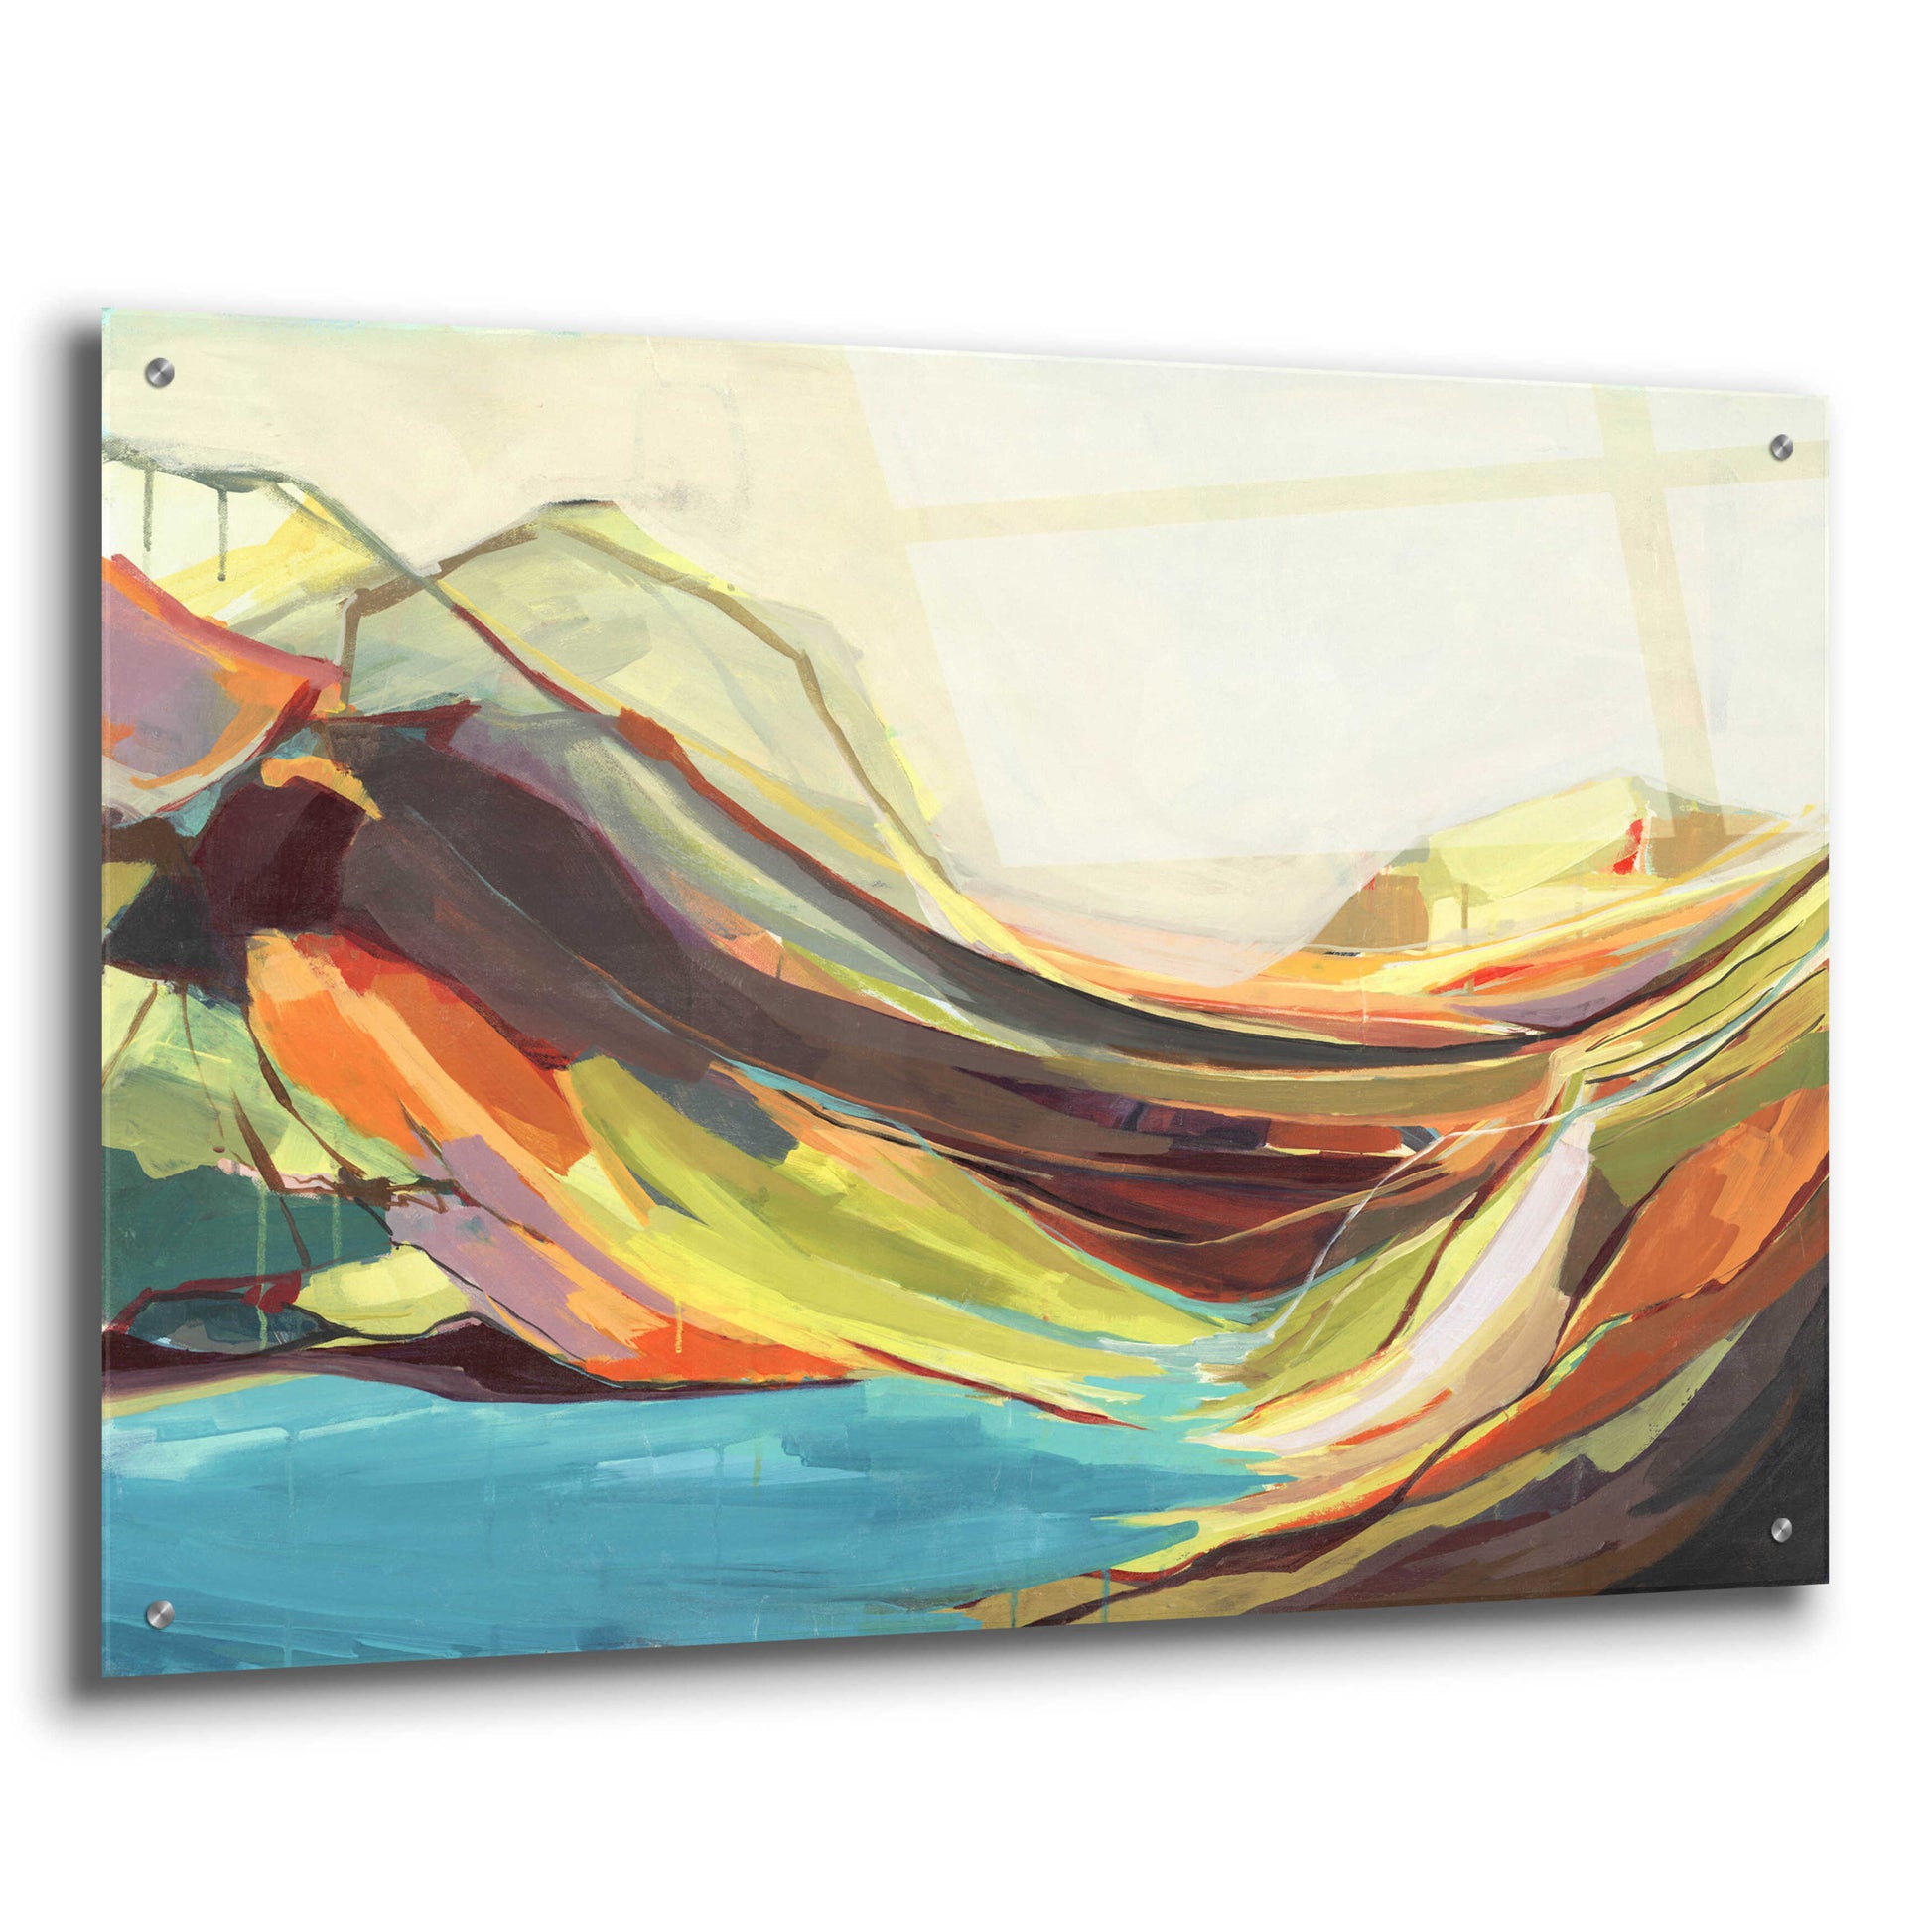 Epic Art 'Mount Desert Isle' by Amanda Hawkins, Acrylic Glass Wall Art,36x24